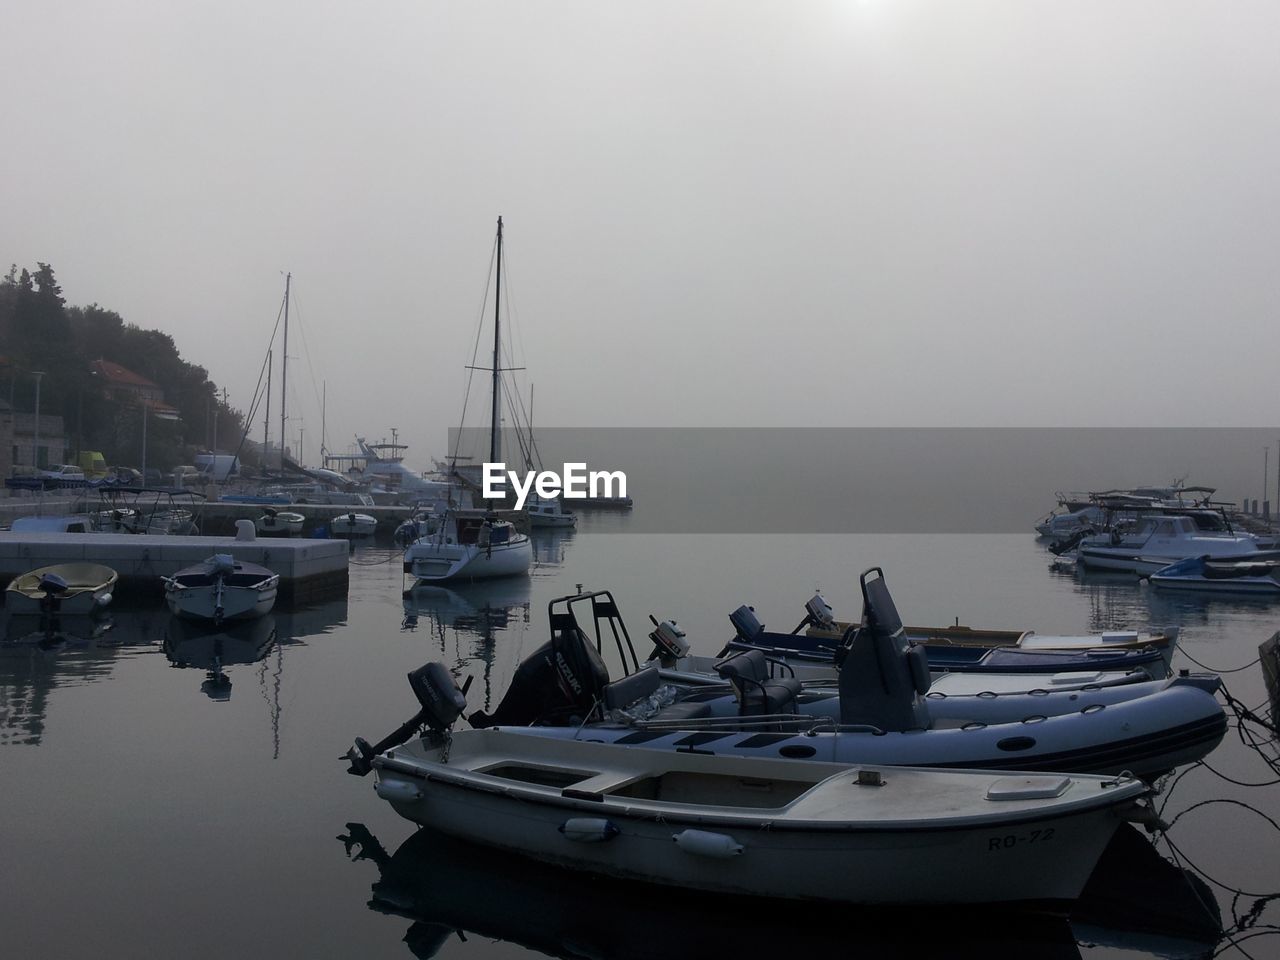 Foggy yacht harbour on croatian island solta